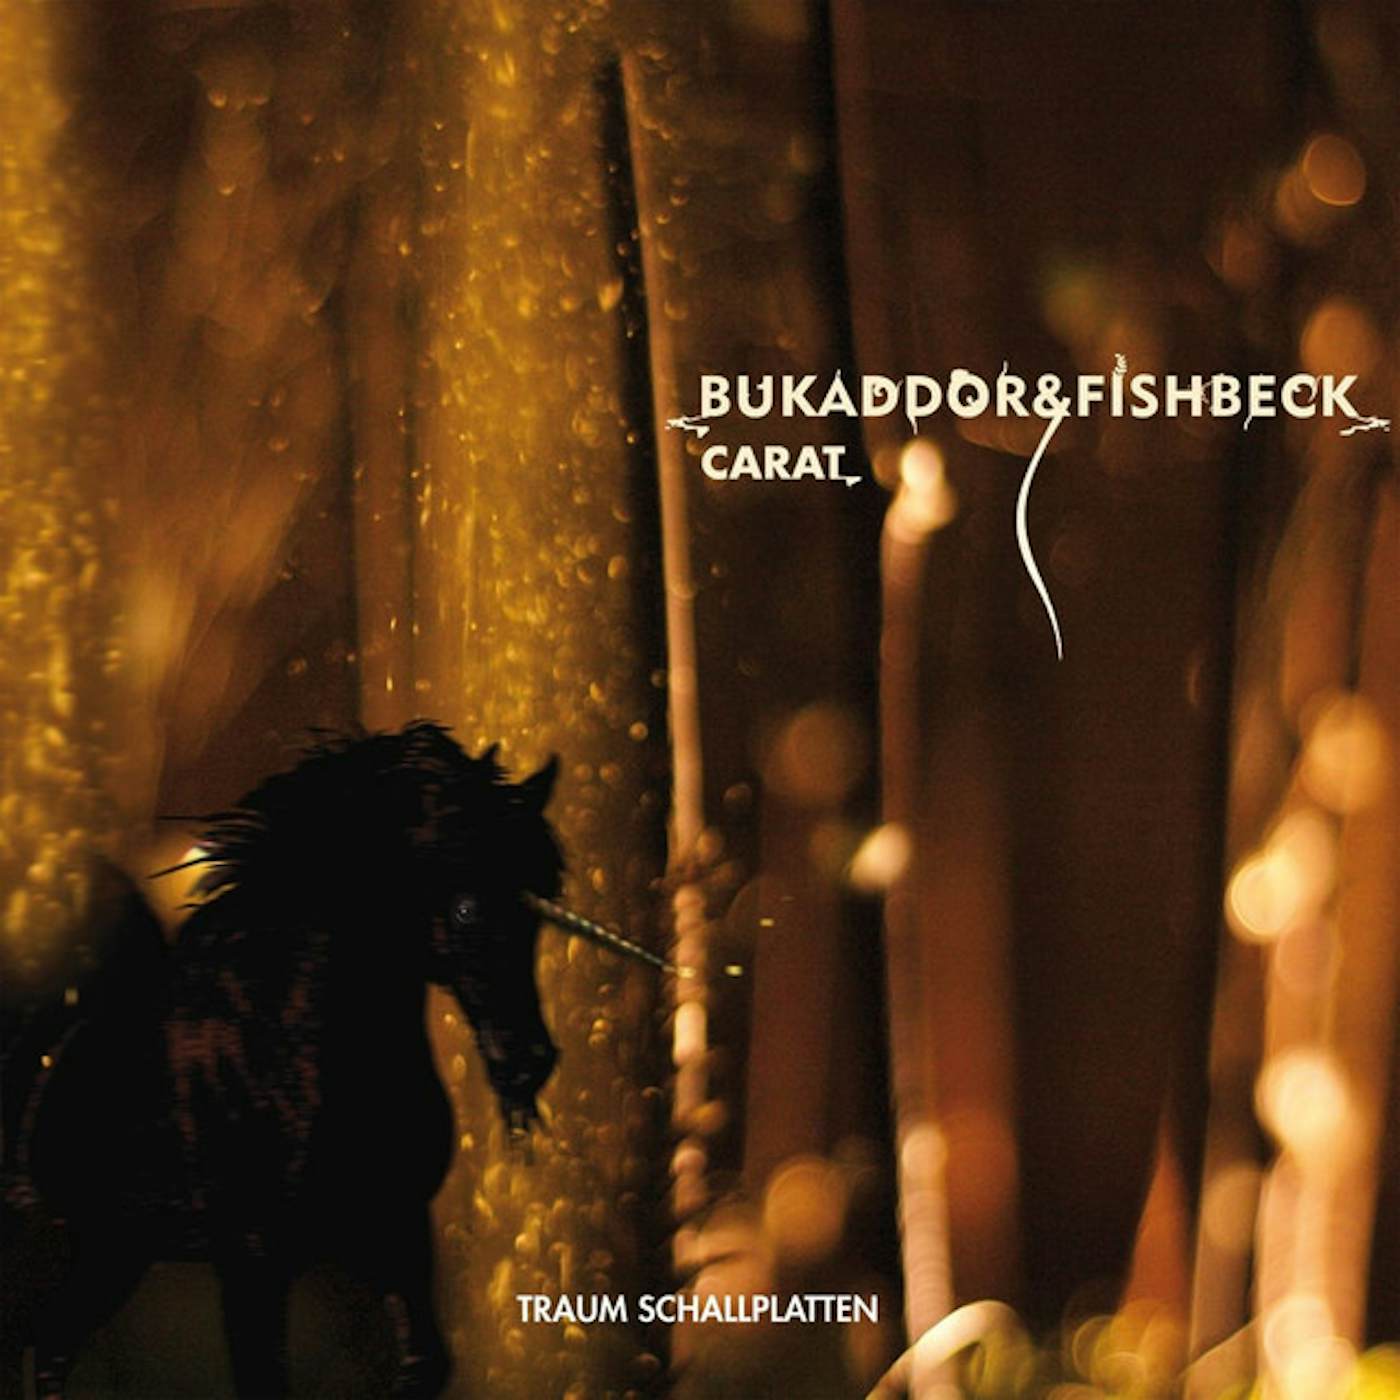 Bukaddor & Fishbeck Carat Vinyl Record